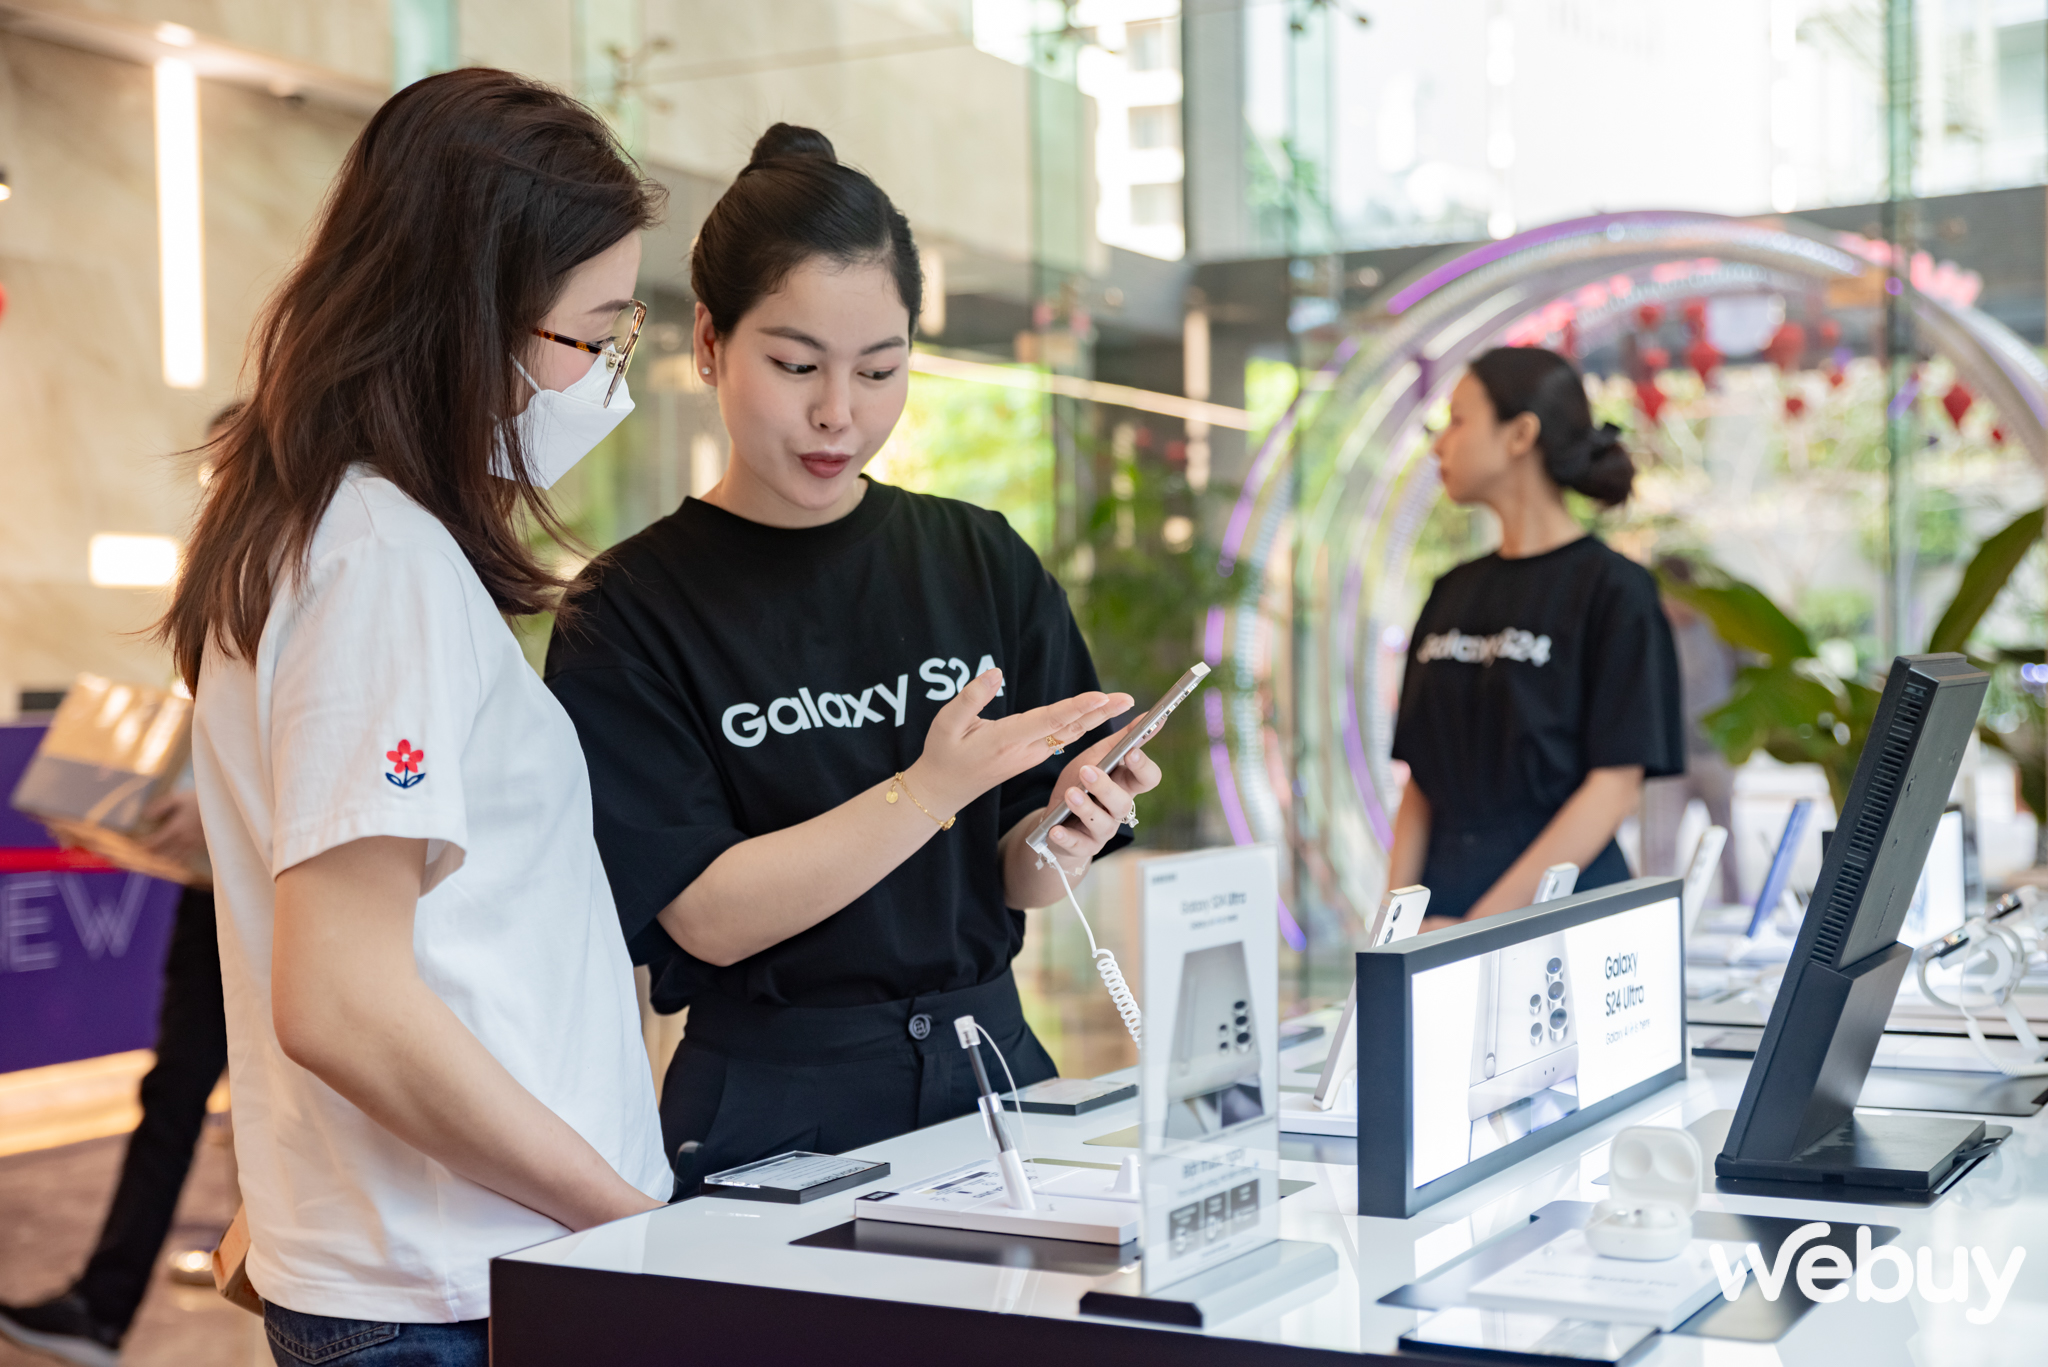 Một vòng trải nghiệm Galaxy AI khắp TP Hồ Chí Minh để thấy Samsung 